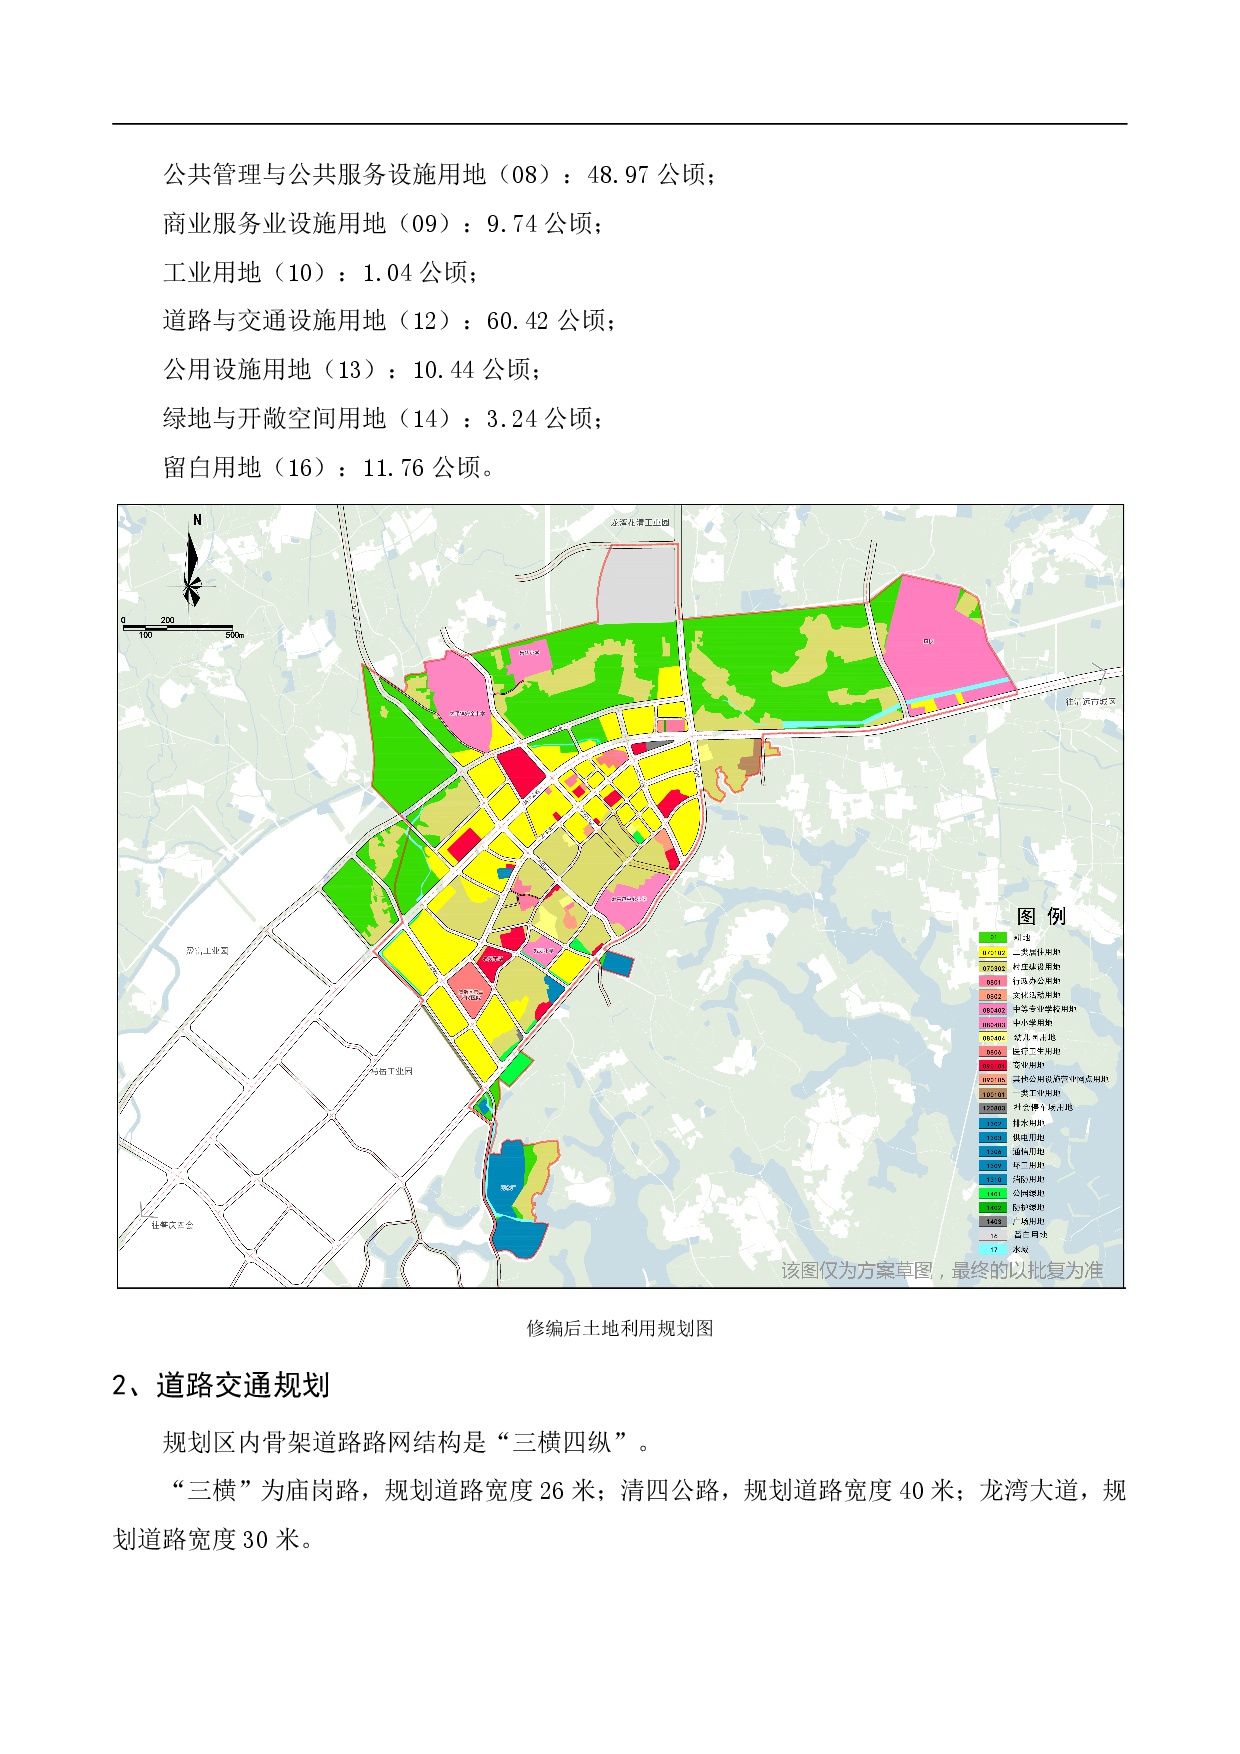 《清新区太平镇区控制性详细规划修编》草案公示1225-003.jpg